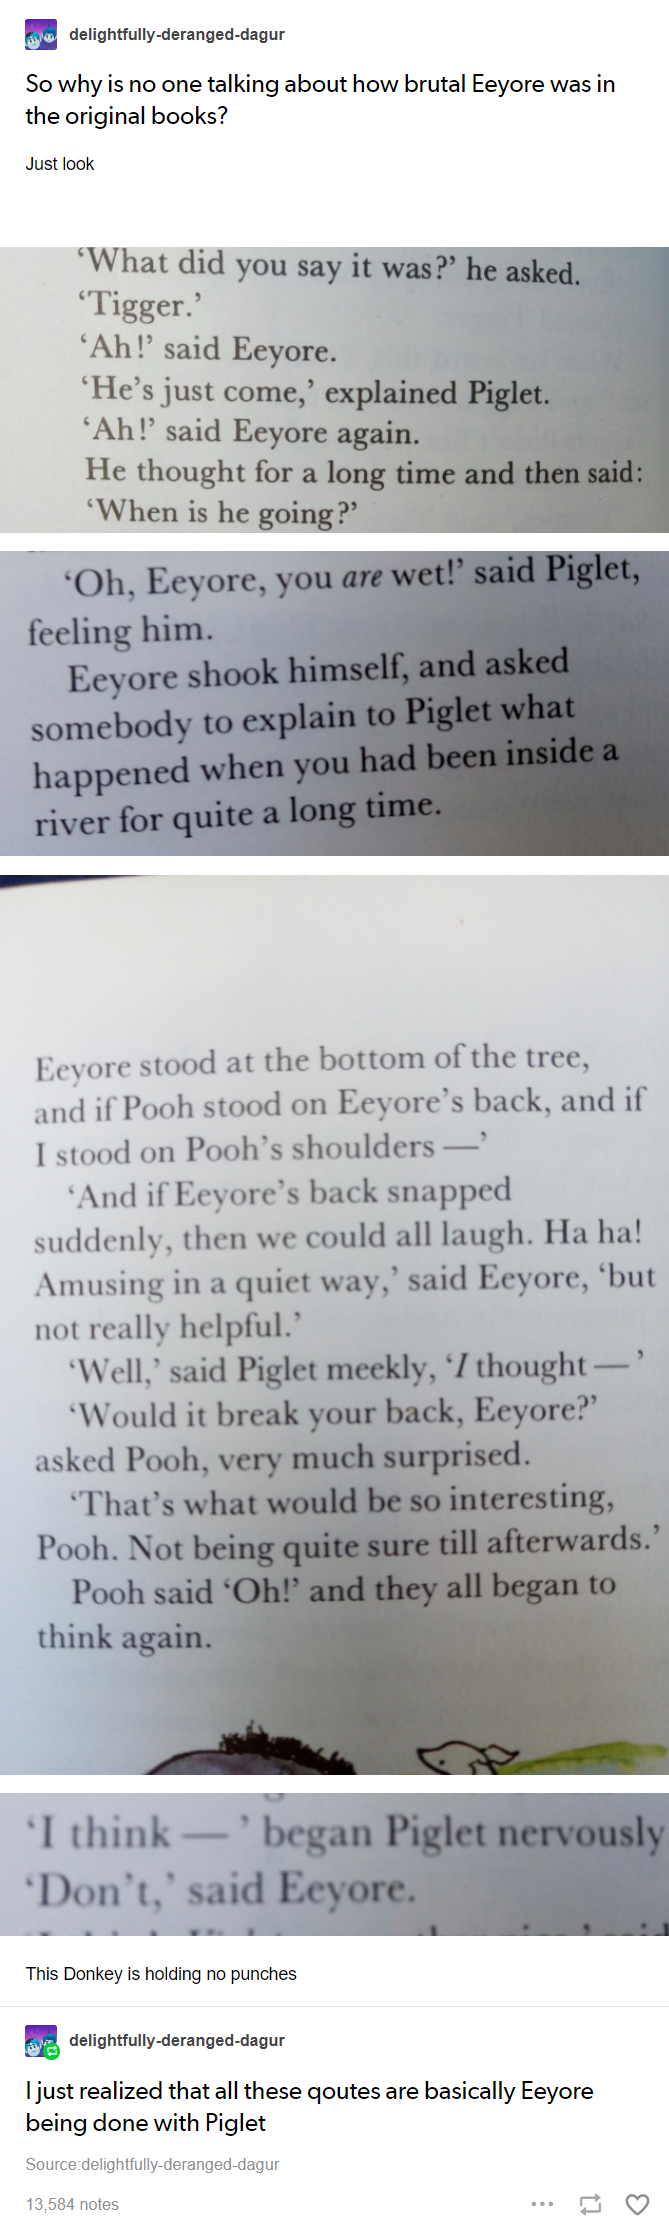 Eeyore+was+full+of+sass.